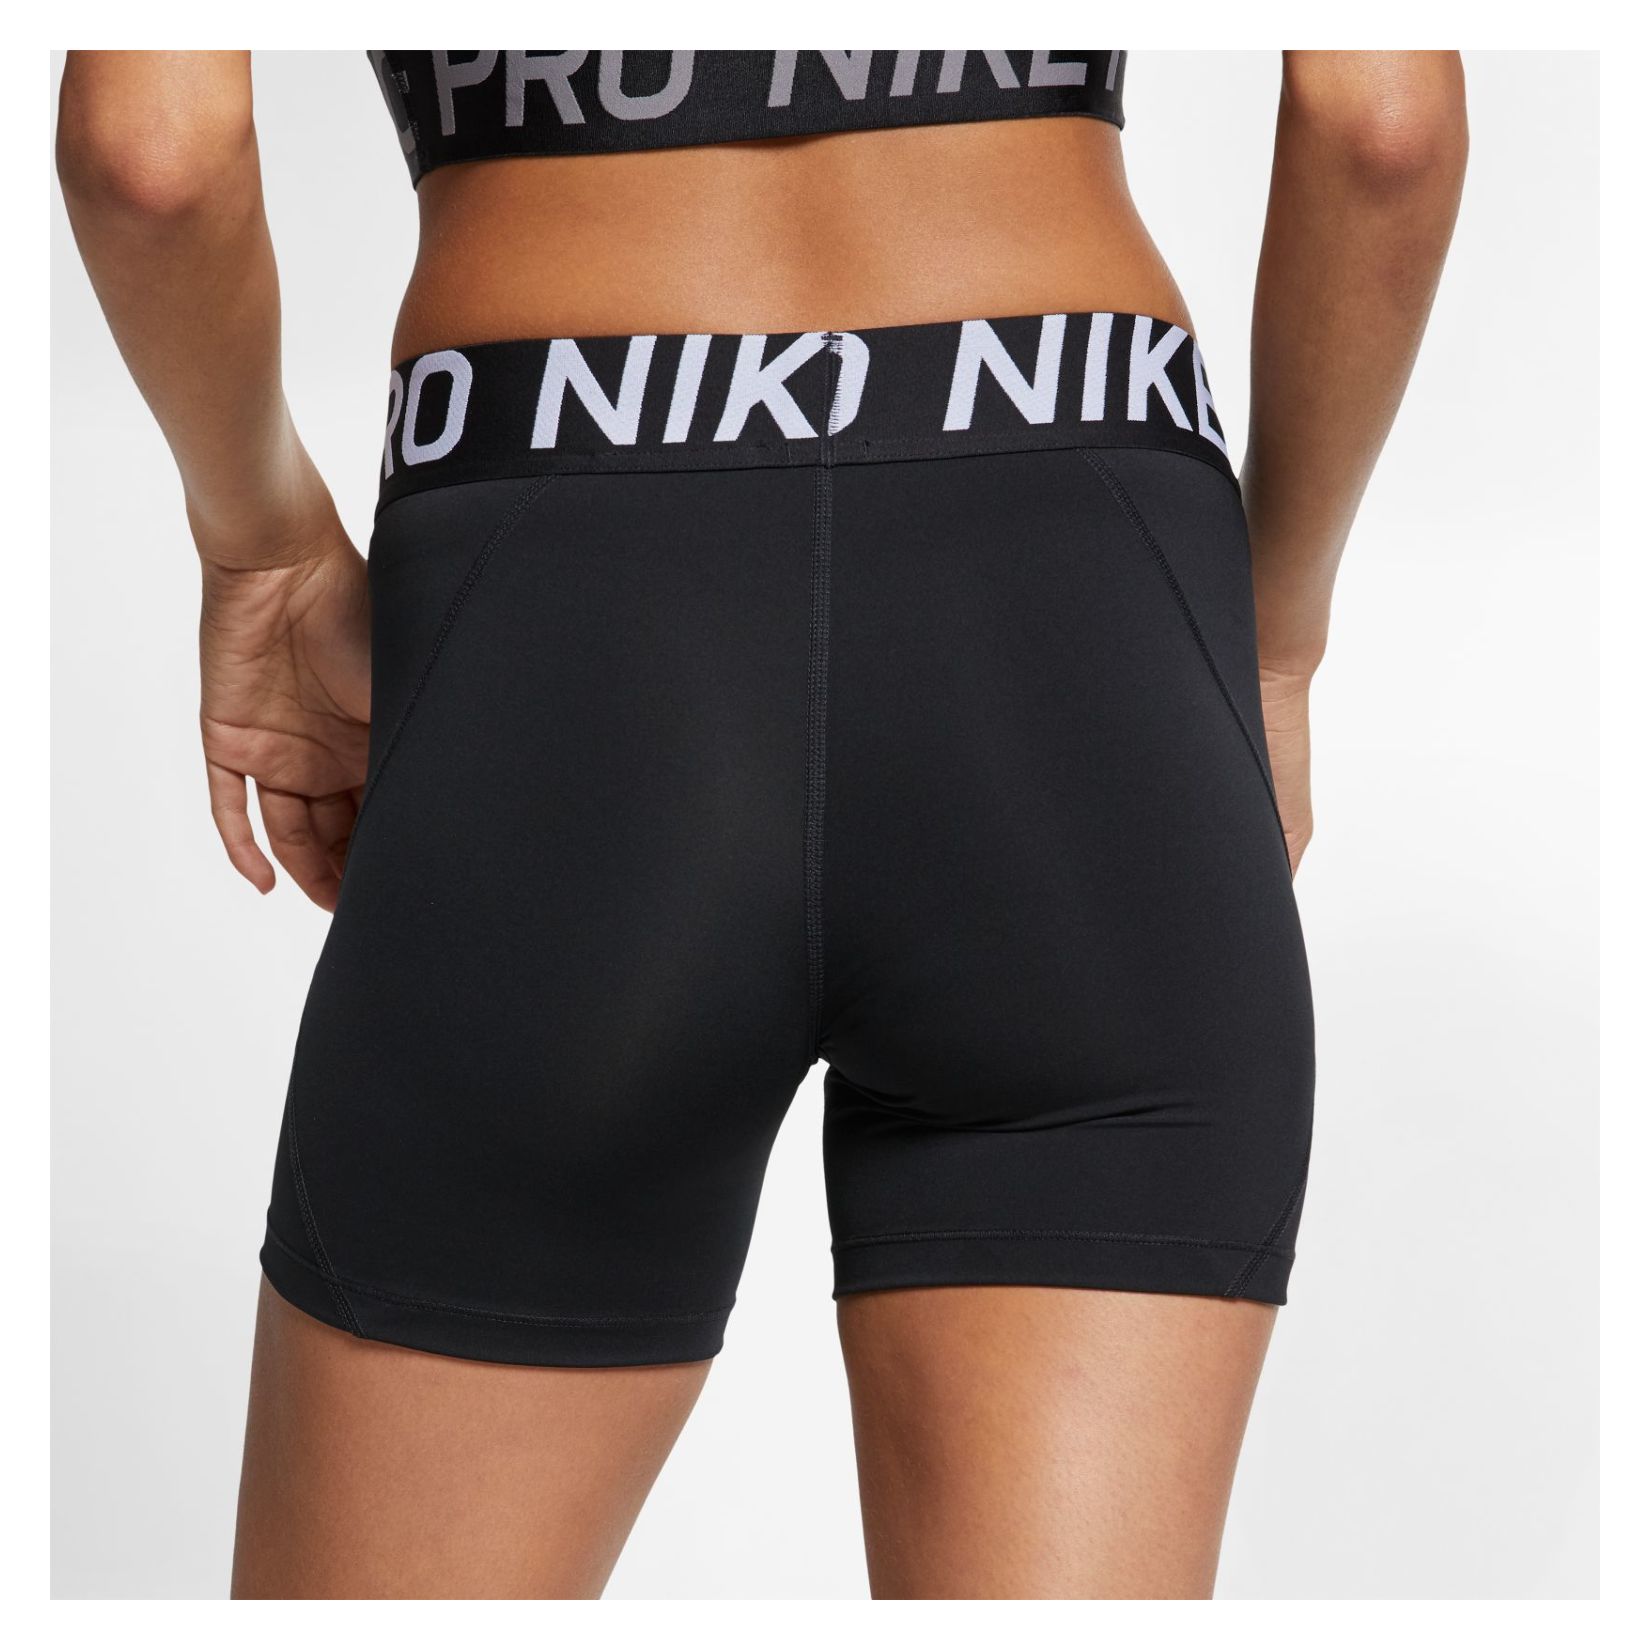 nike women's pro 5 inch shorts